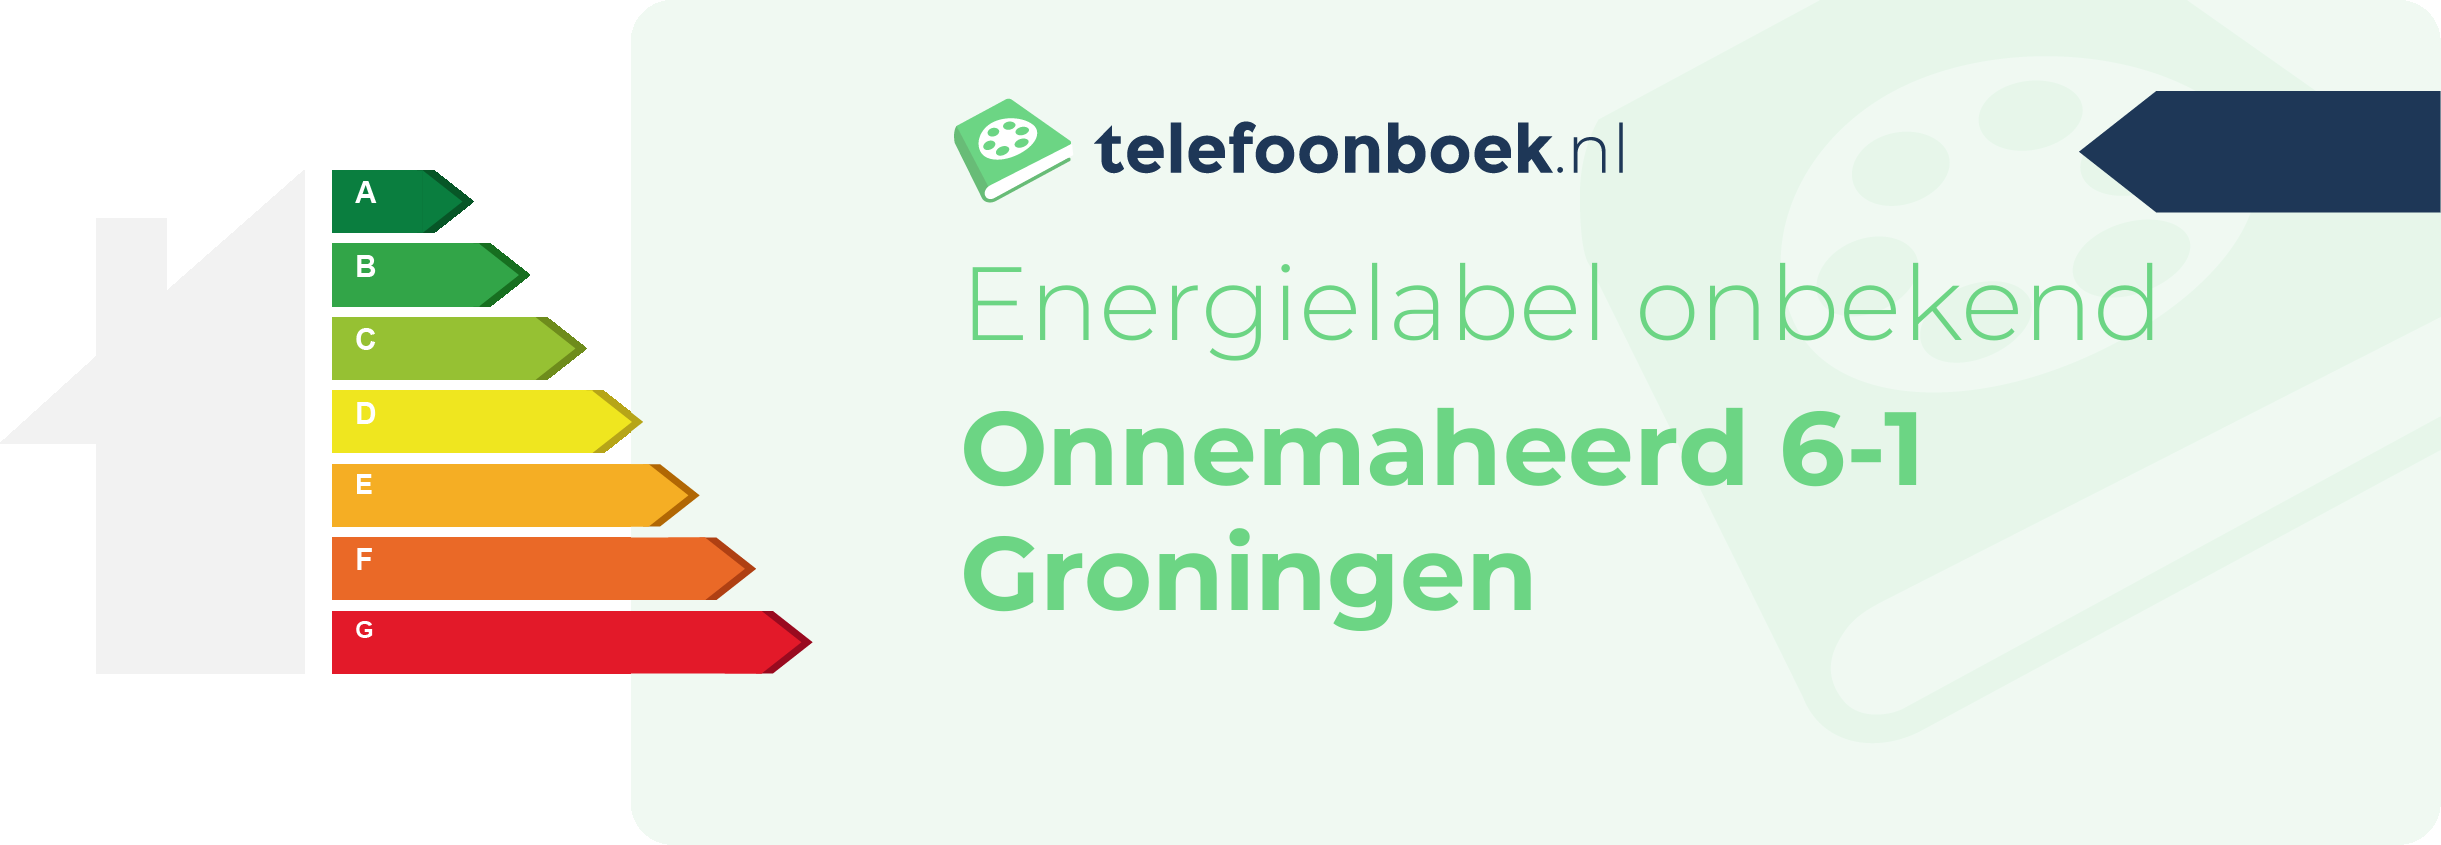 Energielabel Onnemaheerd 6-1 Groningen